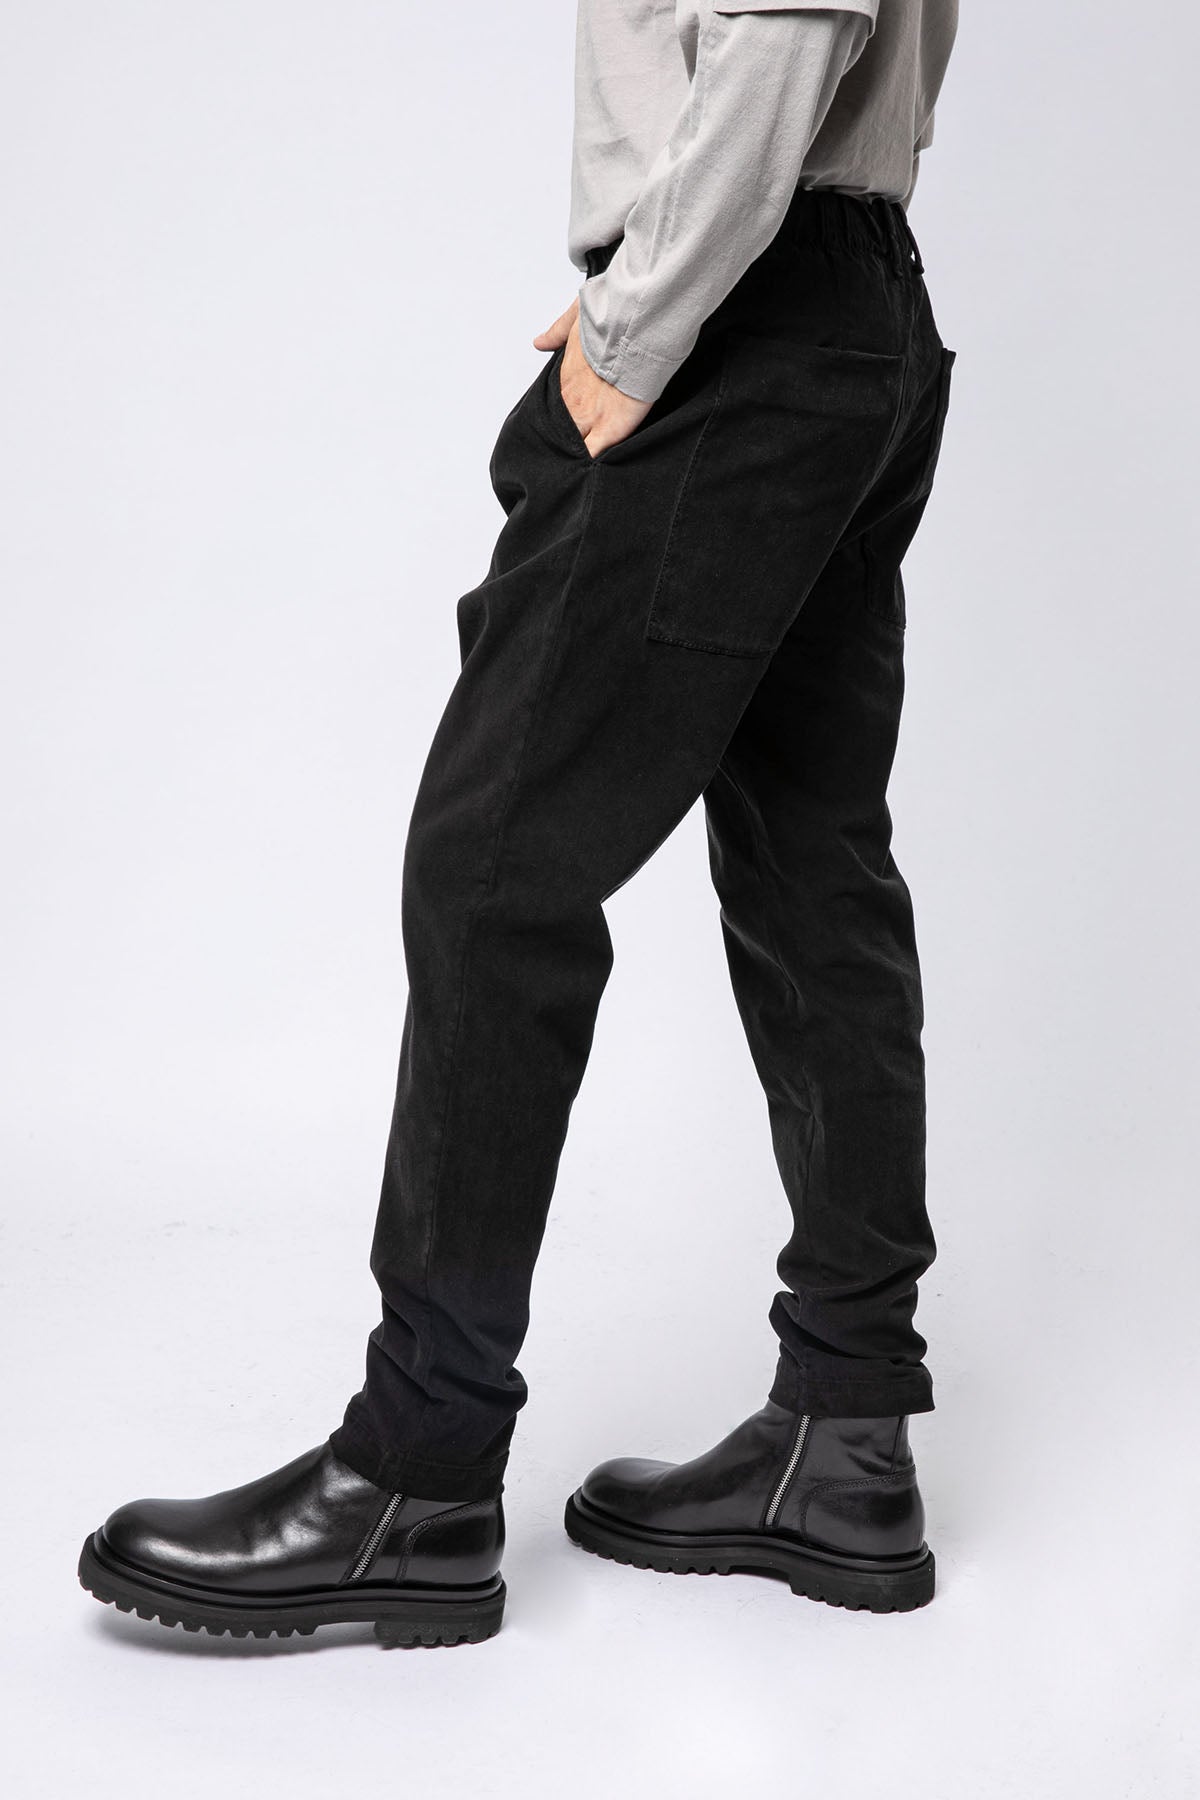 Transit Beli Lastikli Tek Pile Pantolon-Libas Trendy Fashion Store